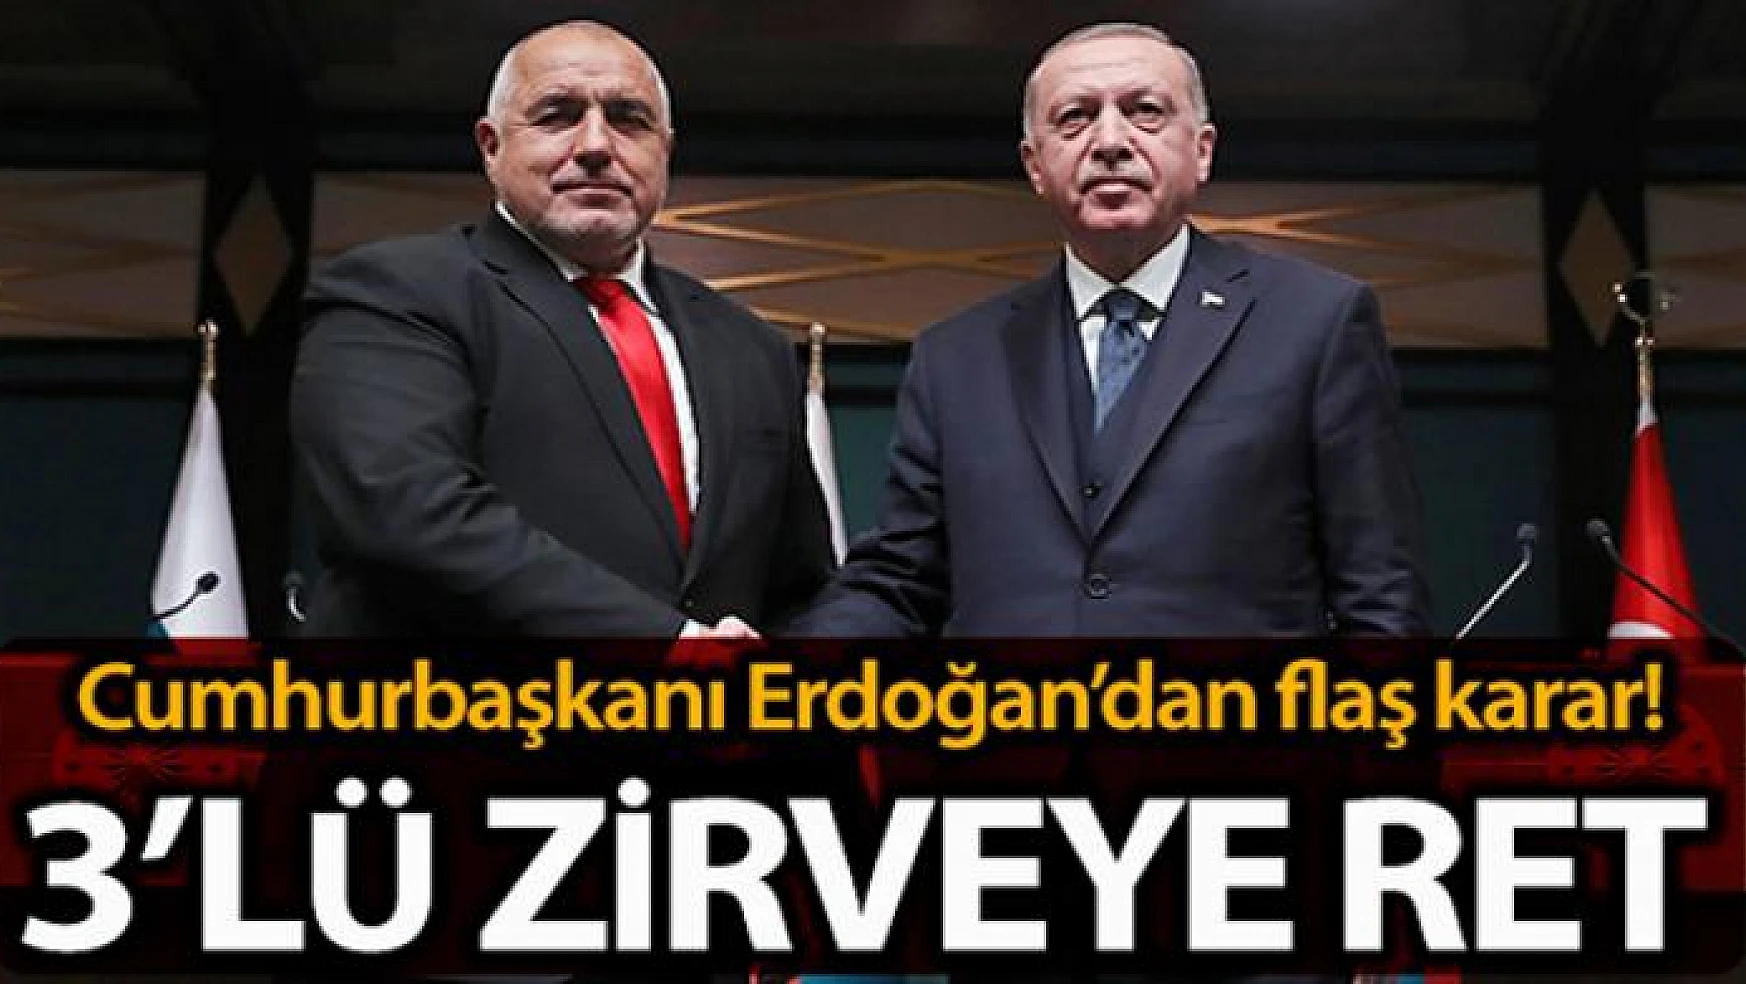 Cumhurbaşkanı Erdoğan'dan Sofya'daki 3'lü zirveye ret